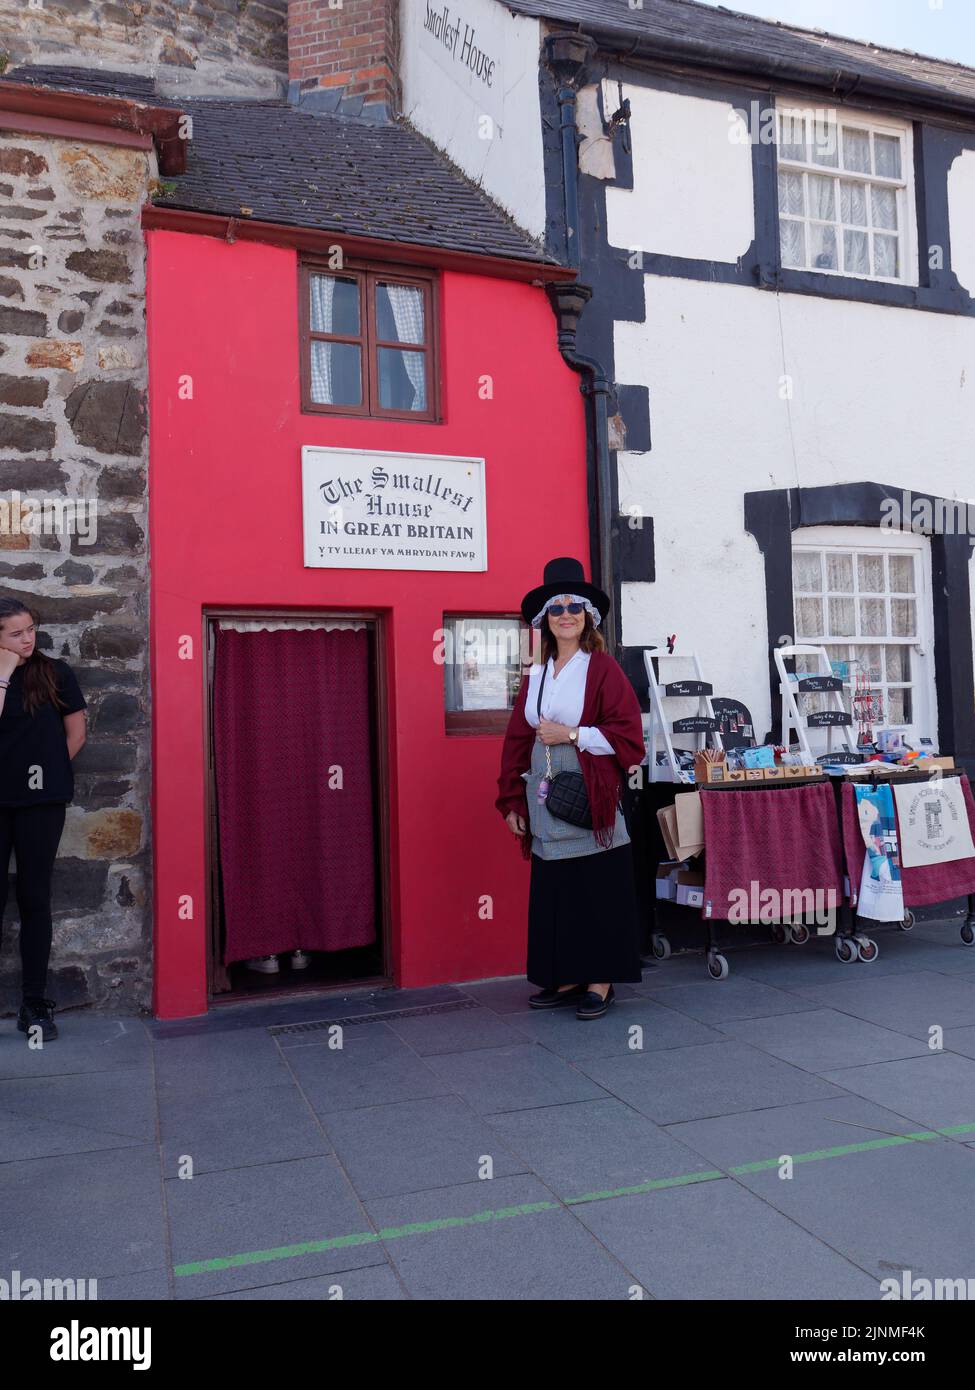 Conwy, Clwyd, Wales, August 07 2022: Lady in a hat steht vor dem kleinsten Haus Großbritanniens. Stockfoto